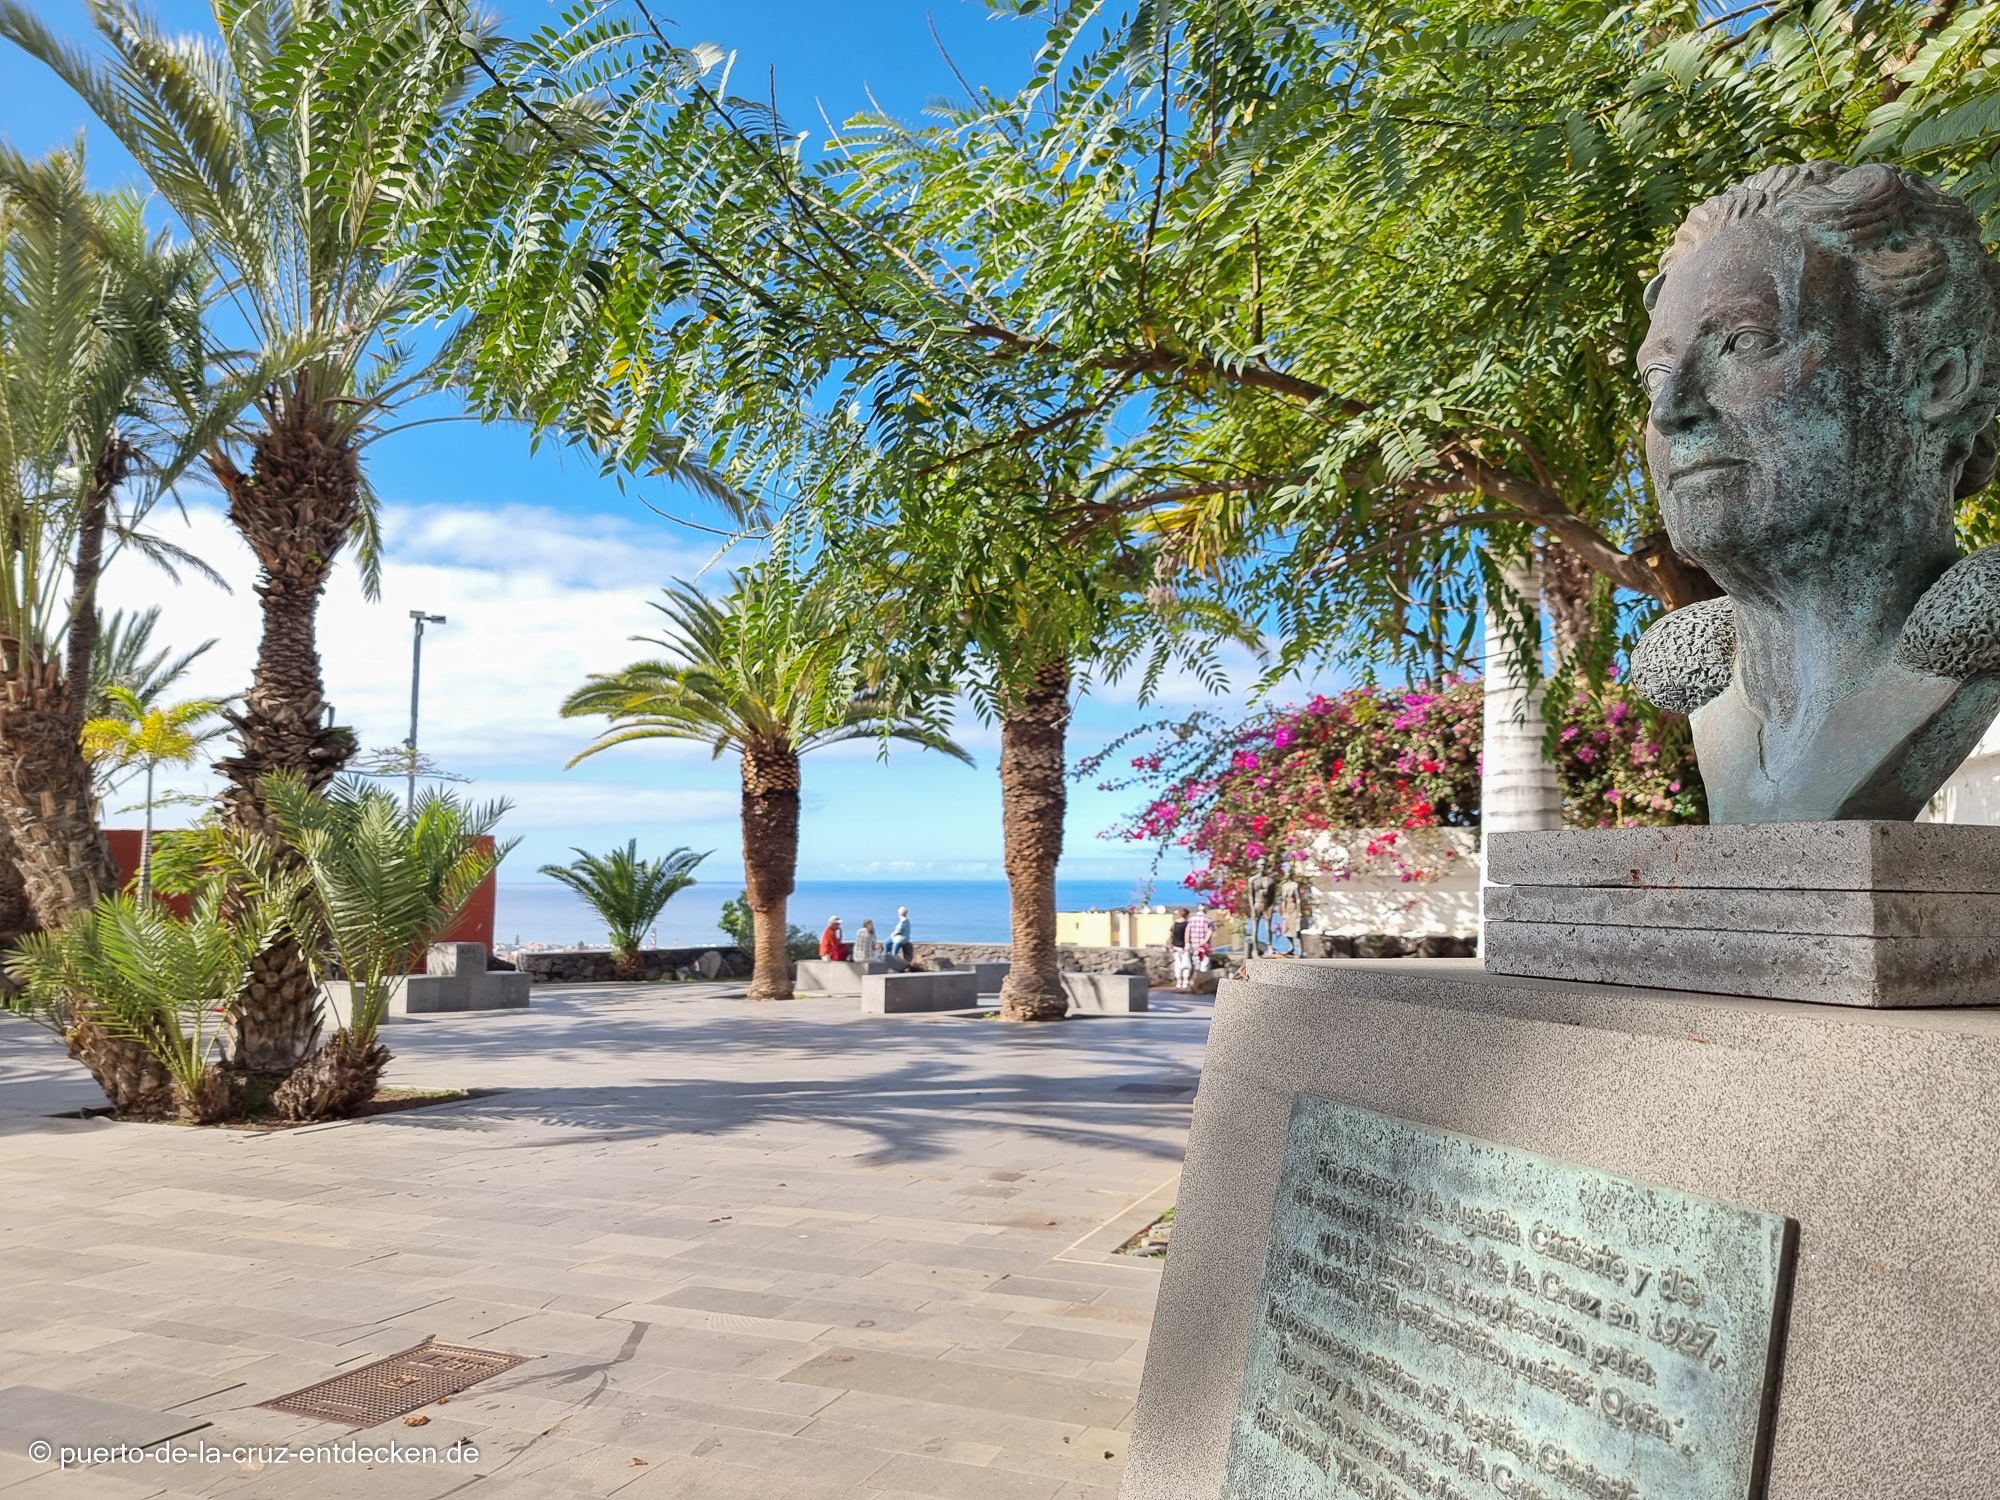 Eine Büste von Agatha Christie erinnert an den Besuch der Autorin in Puerto de la Cruz.